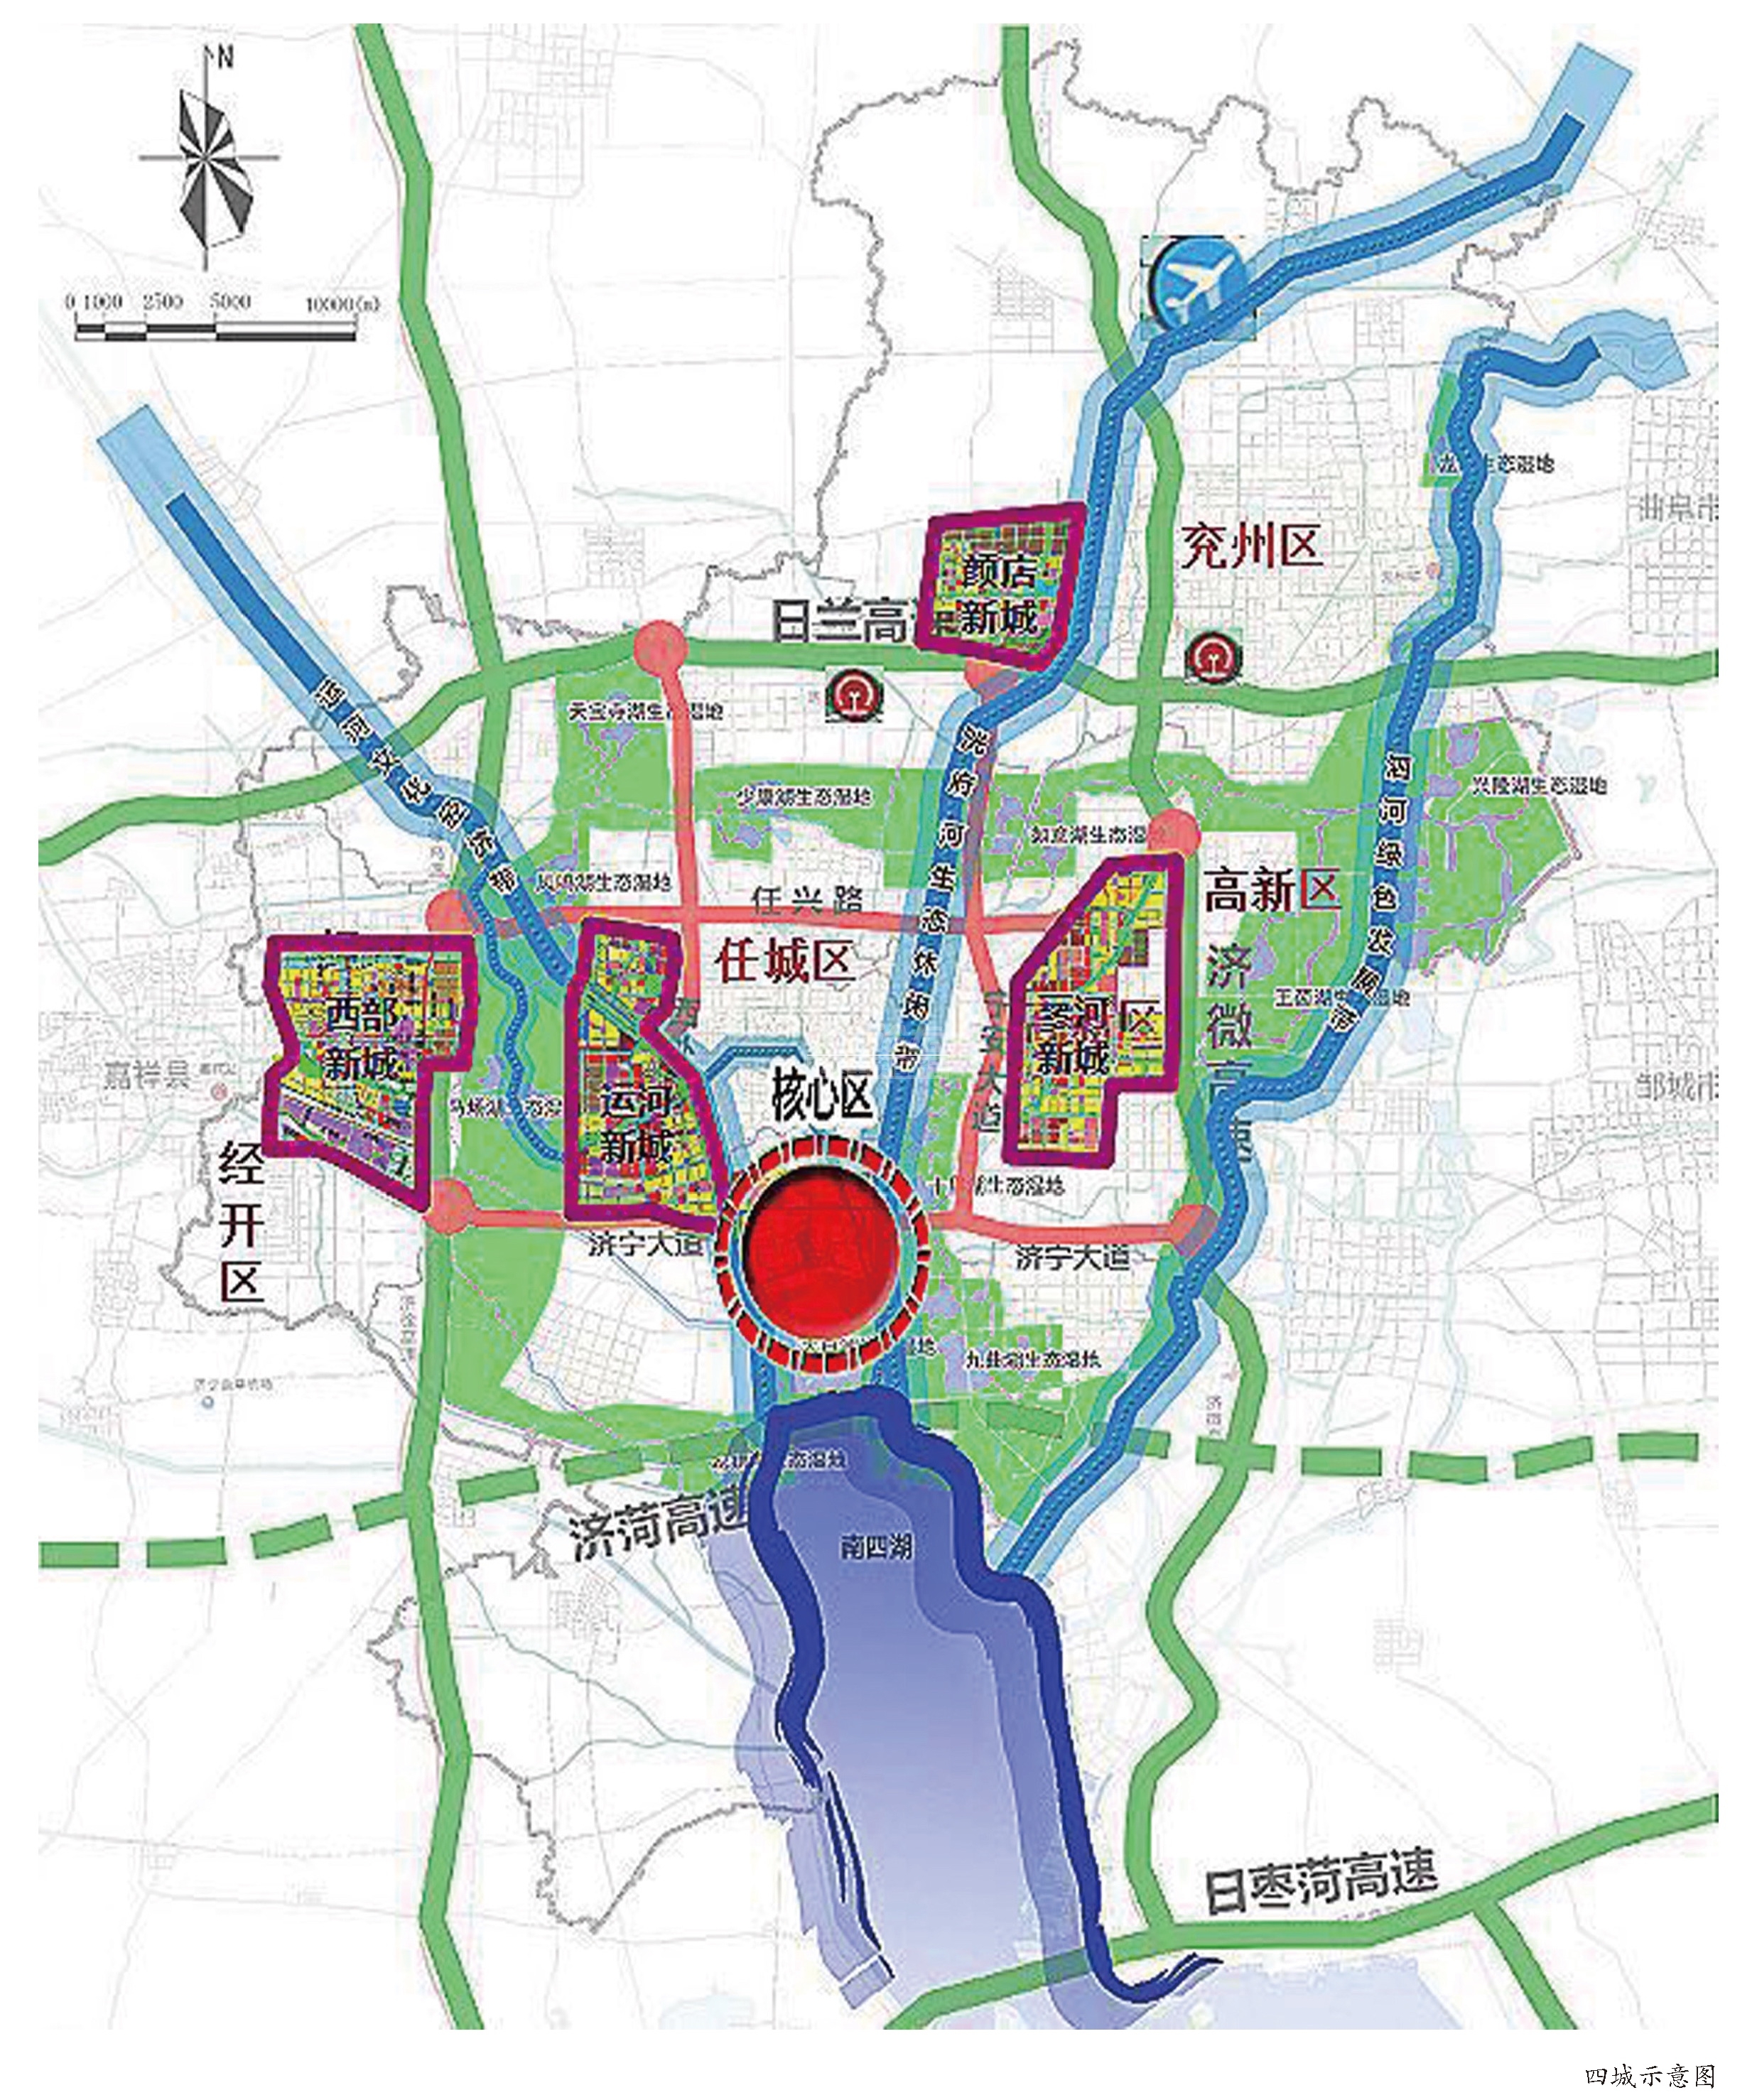 《济宁中心城区近期重点建设任务(2018